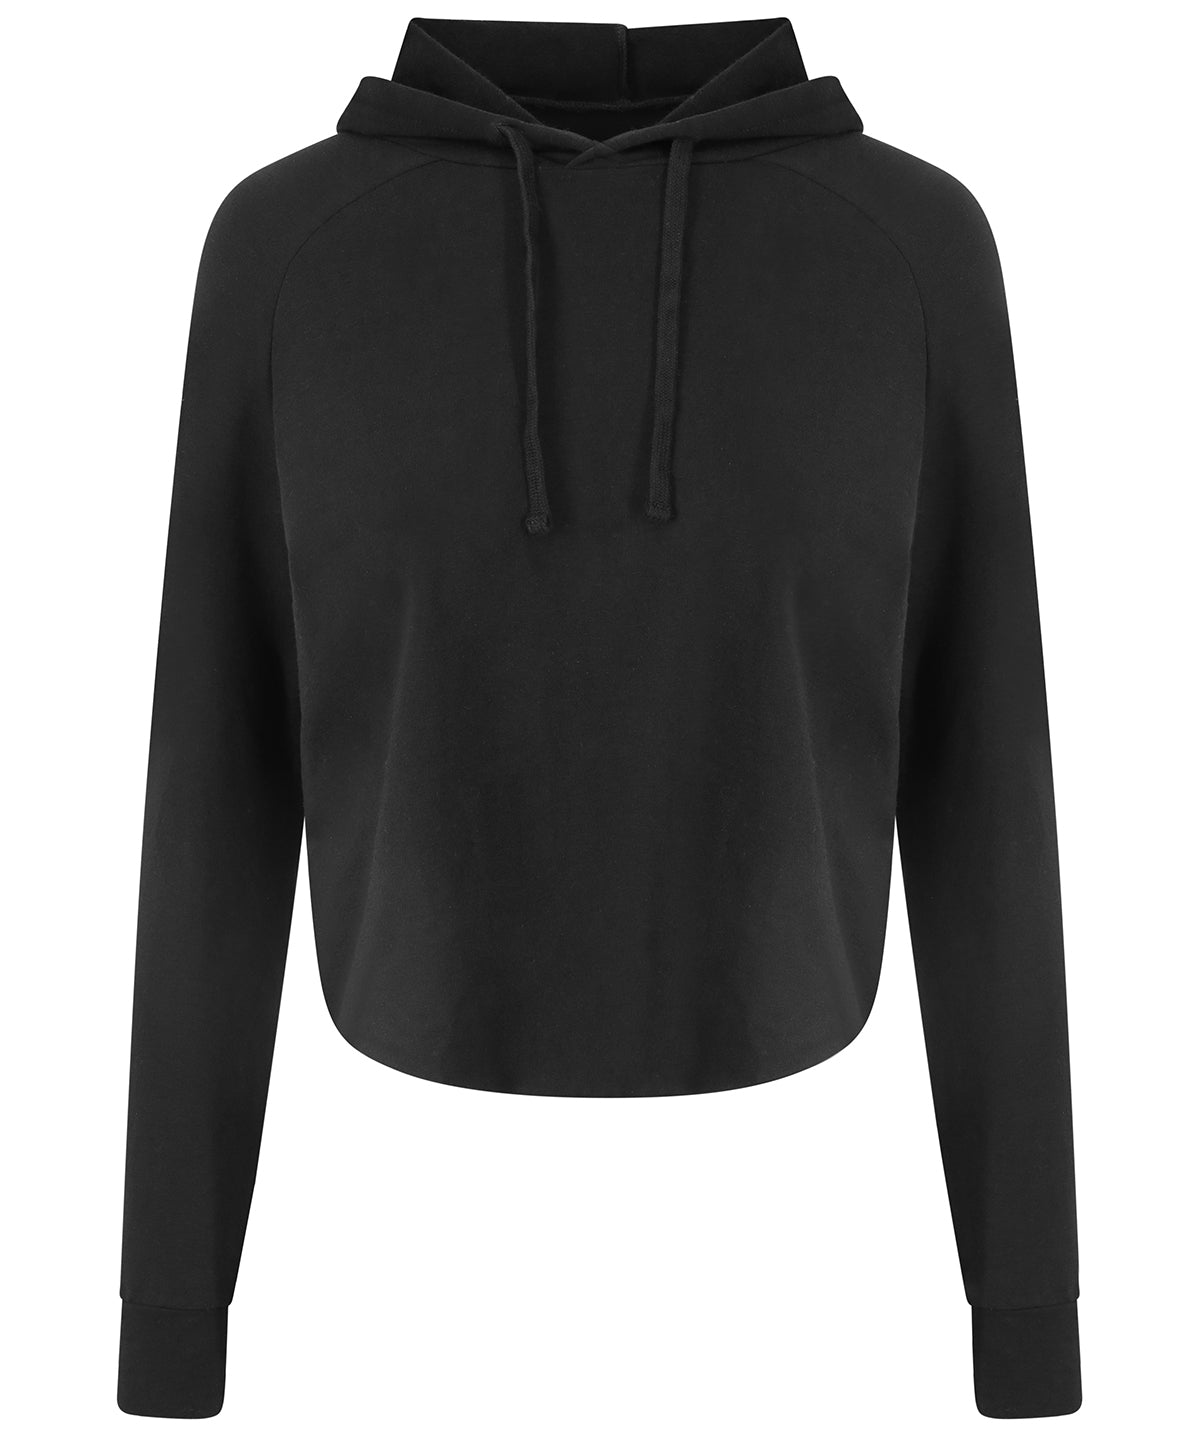 Women's cross back hoodie | Jet Black